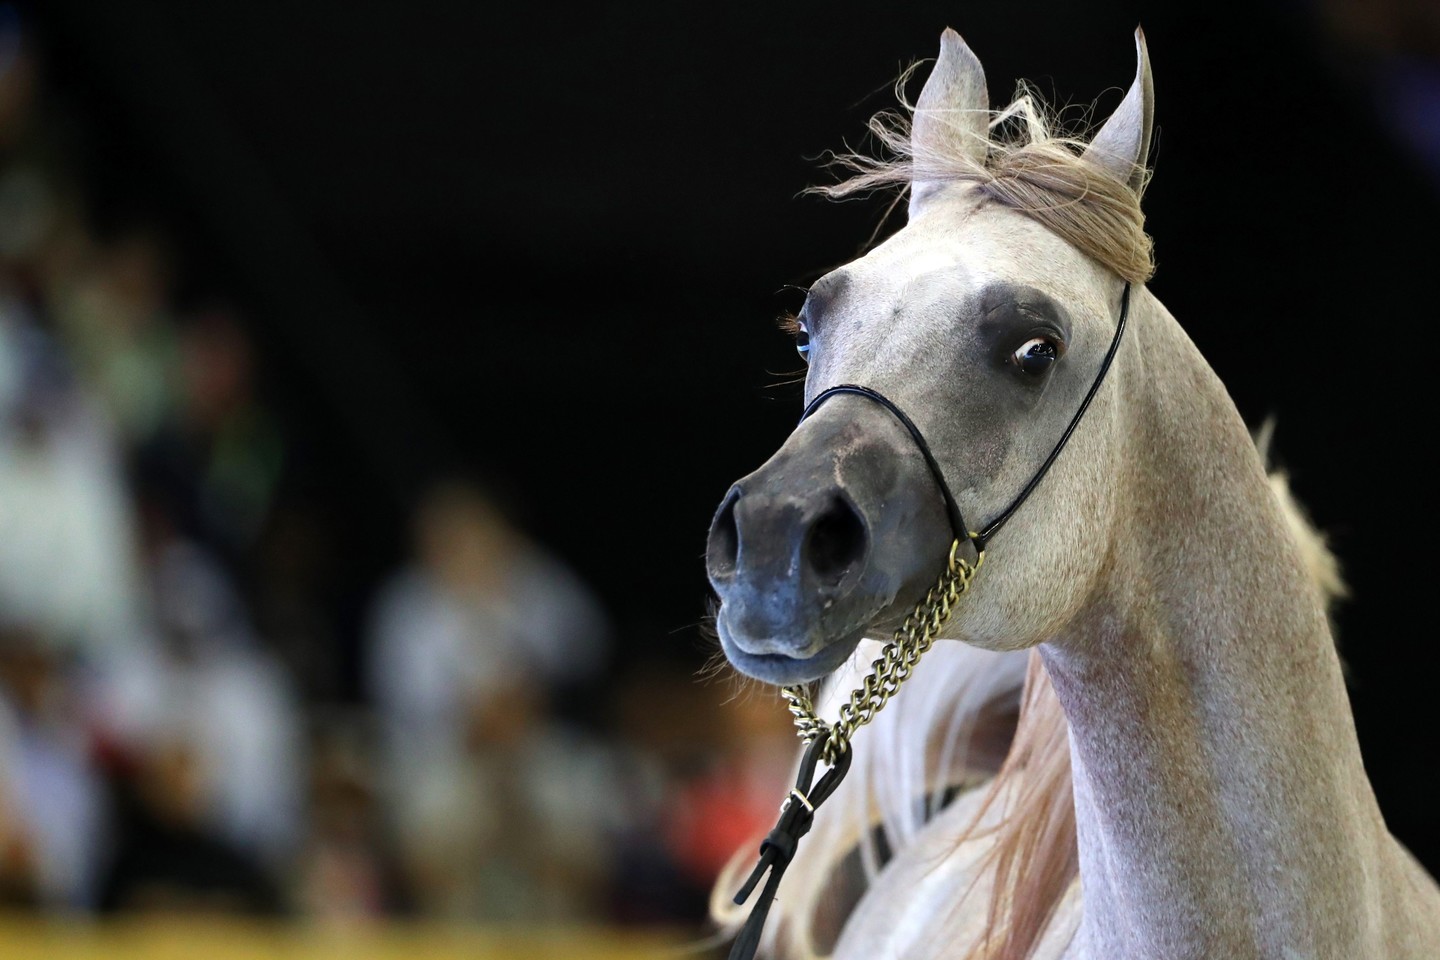  Ilgaamžiai, energingi, paklusnūs ir ištvermingi arabų žirgai naudojami ir kitoms žirgų veislėms pagerinti.<br>Scanpix nuotr.